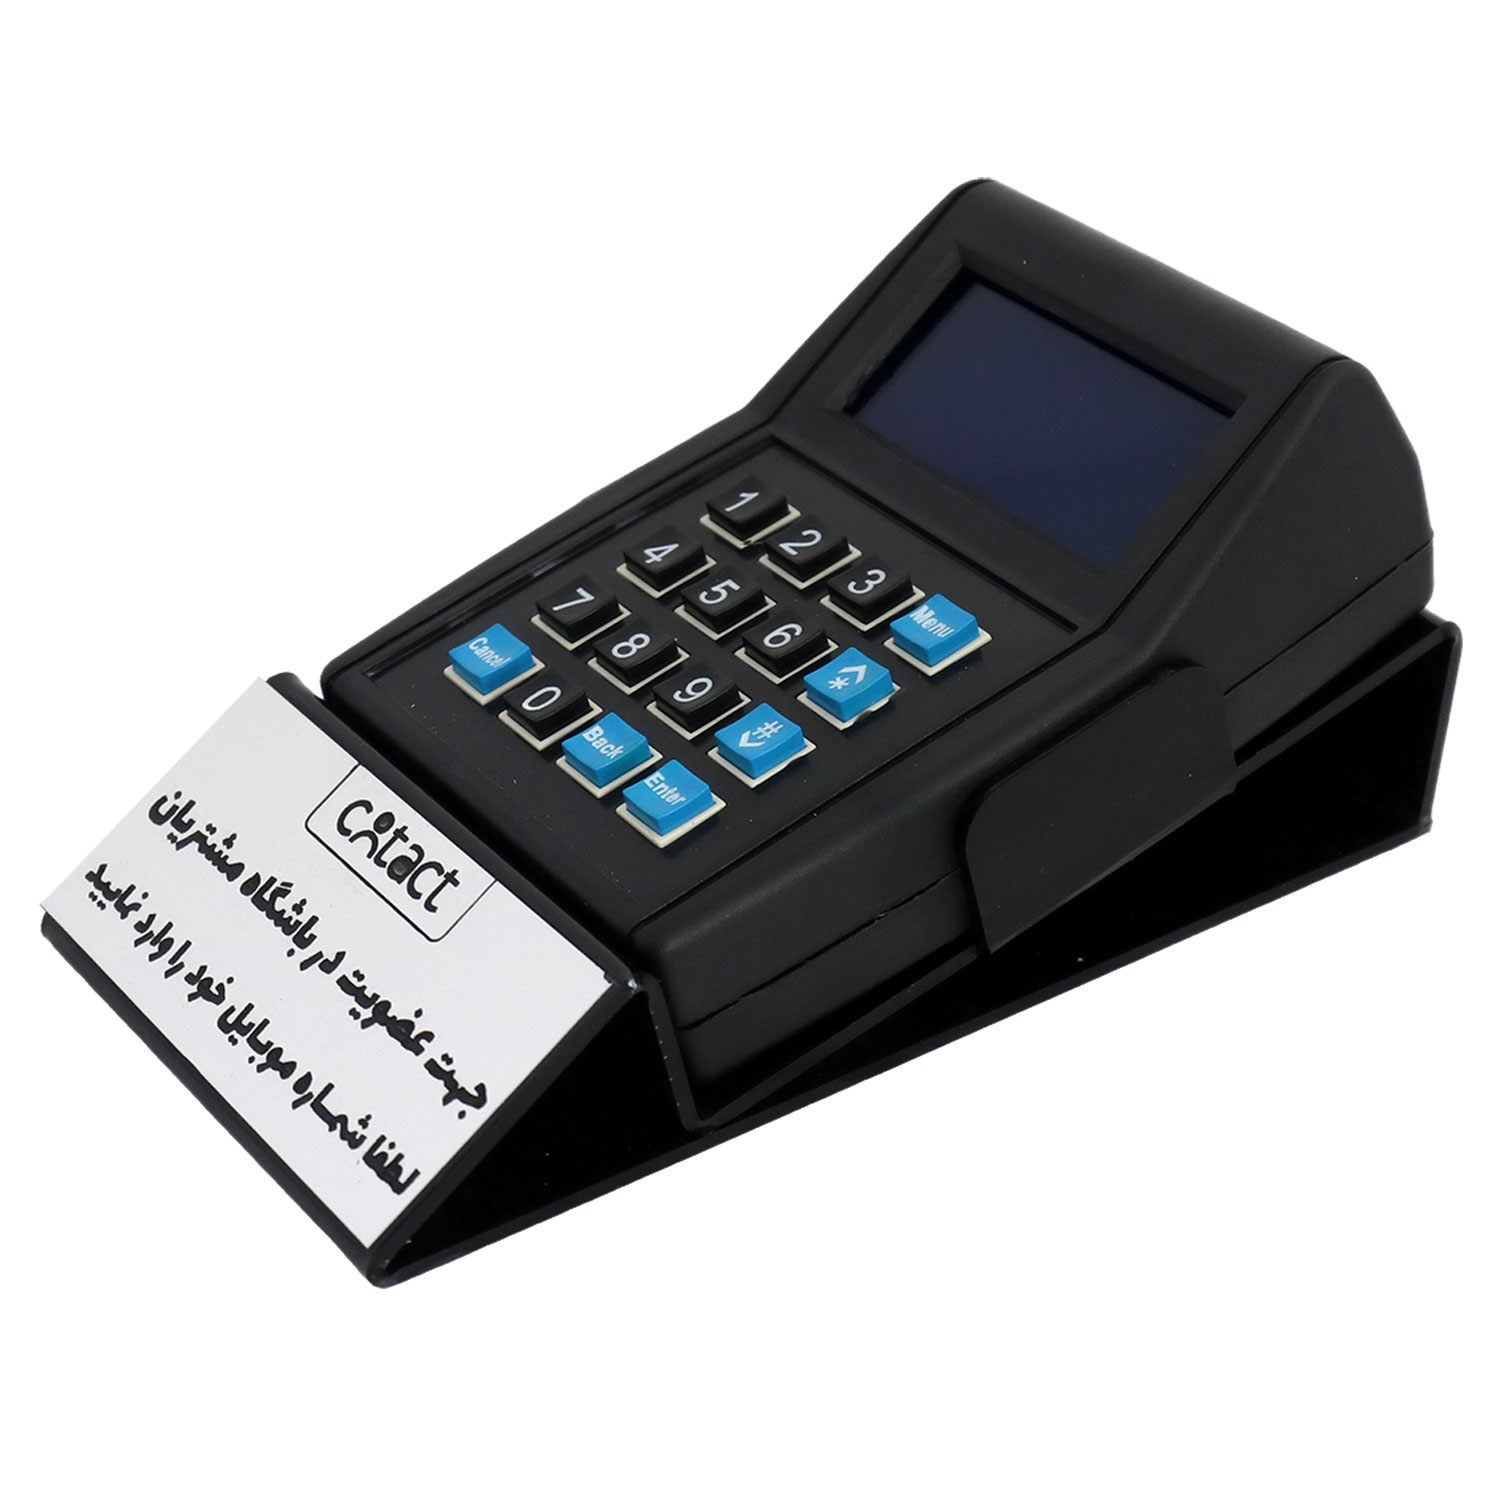 دستگاه ذخیره ساز شماره تماس مشتریان کانتکت مدل P70-2 به همراه پایه رو میزی 4285681